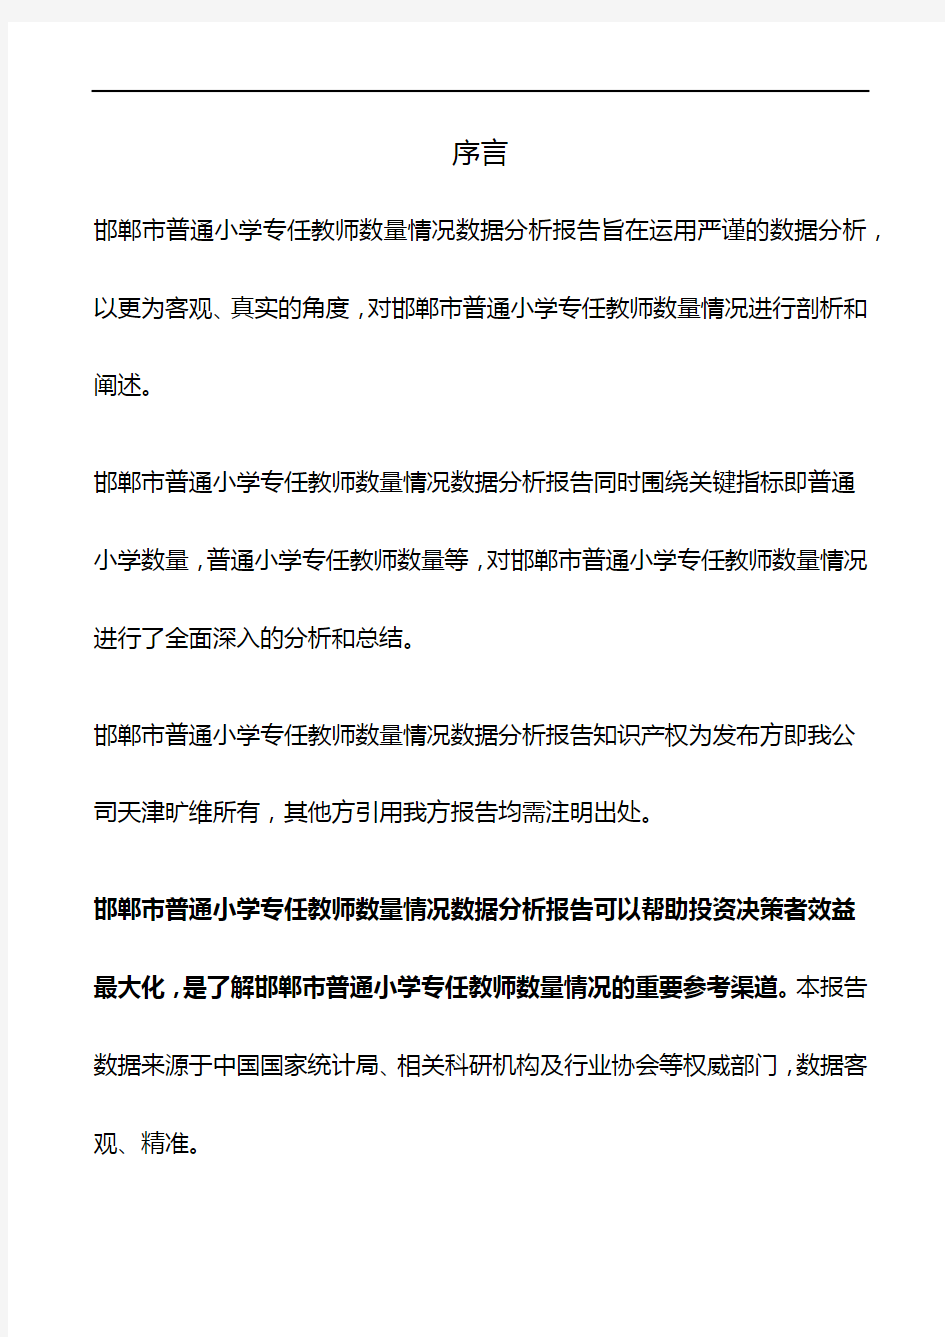 邯郸市(全市)普通小学专任教师数量情况3年数据分析报告2019版